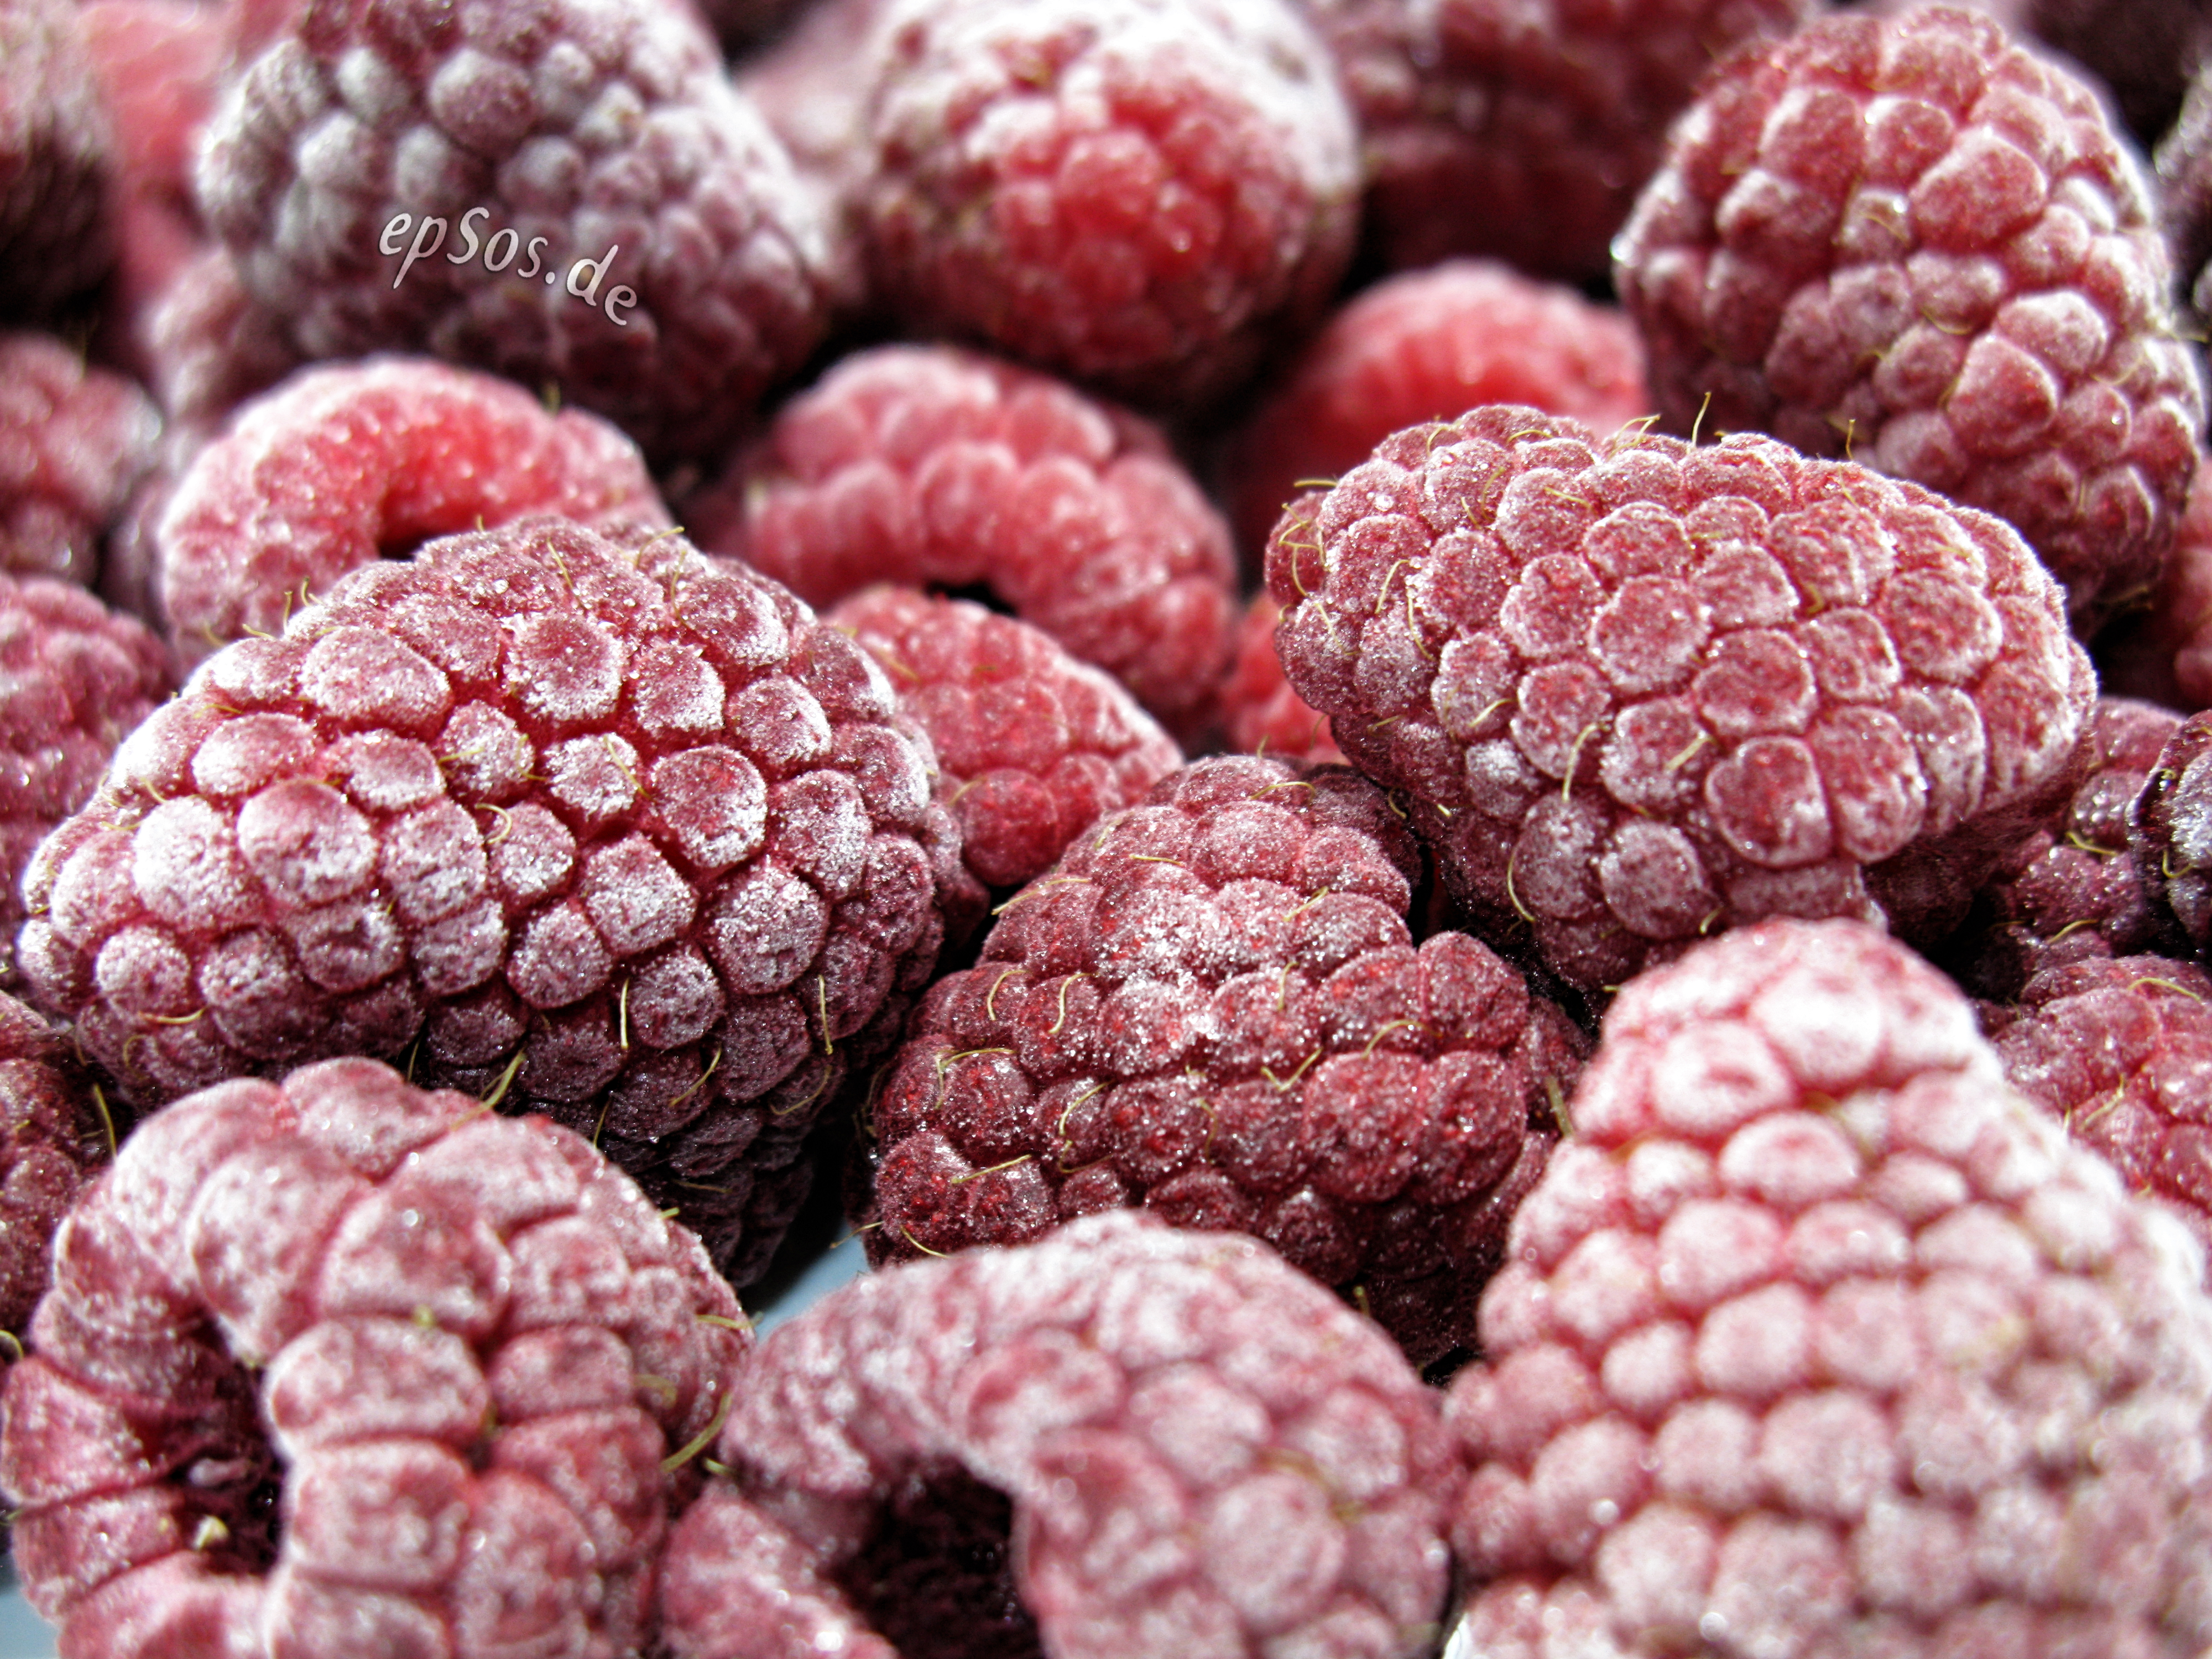 File:Frozen Raspberries.jpg - Wikimedia Commons